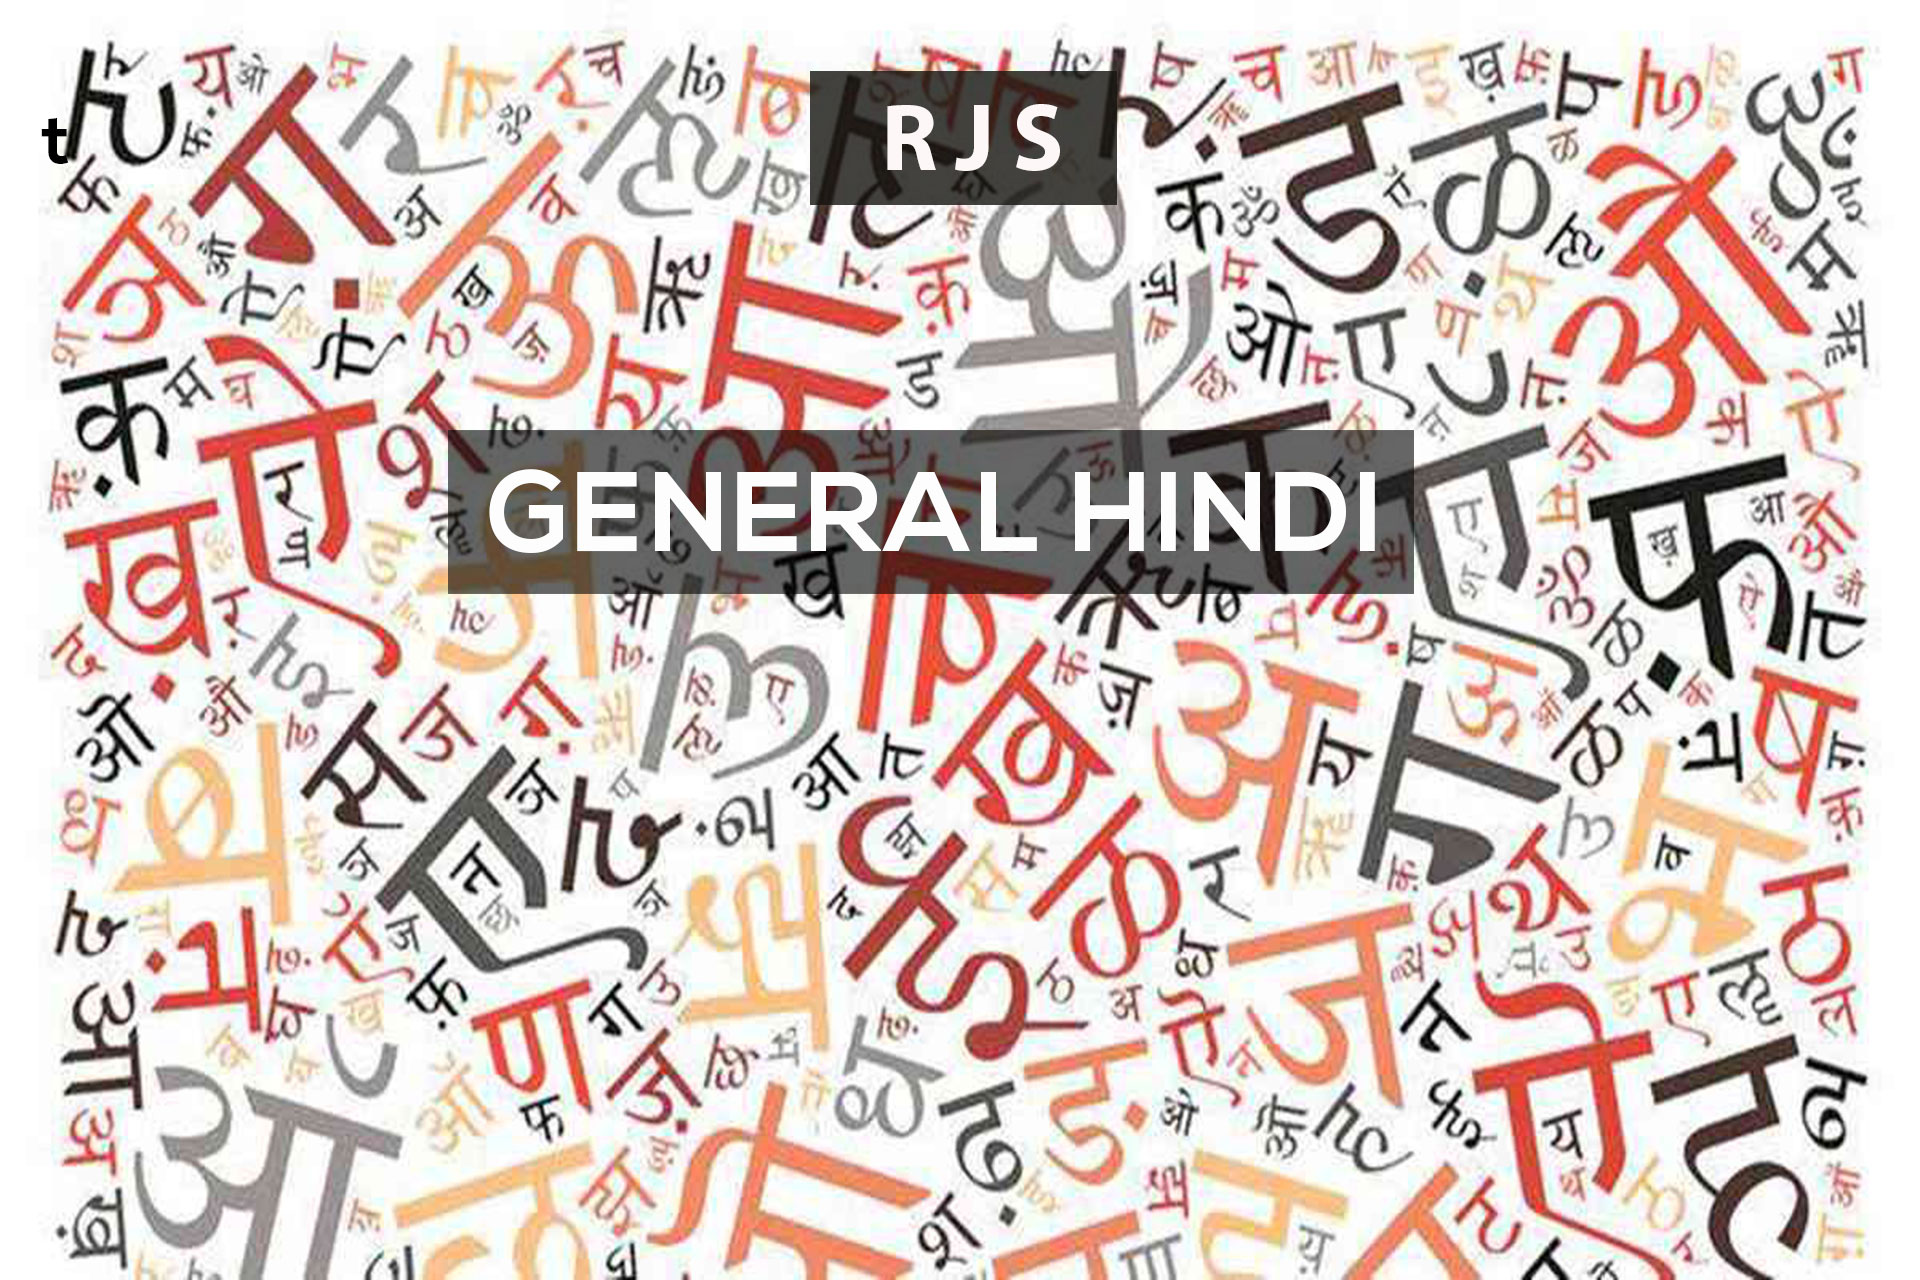 General Hindi – RJS